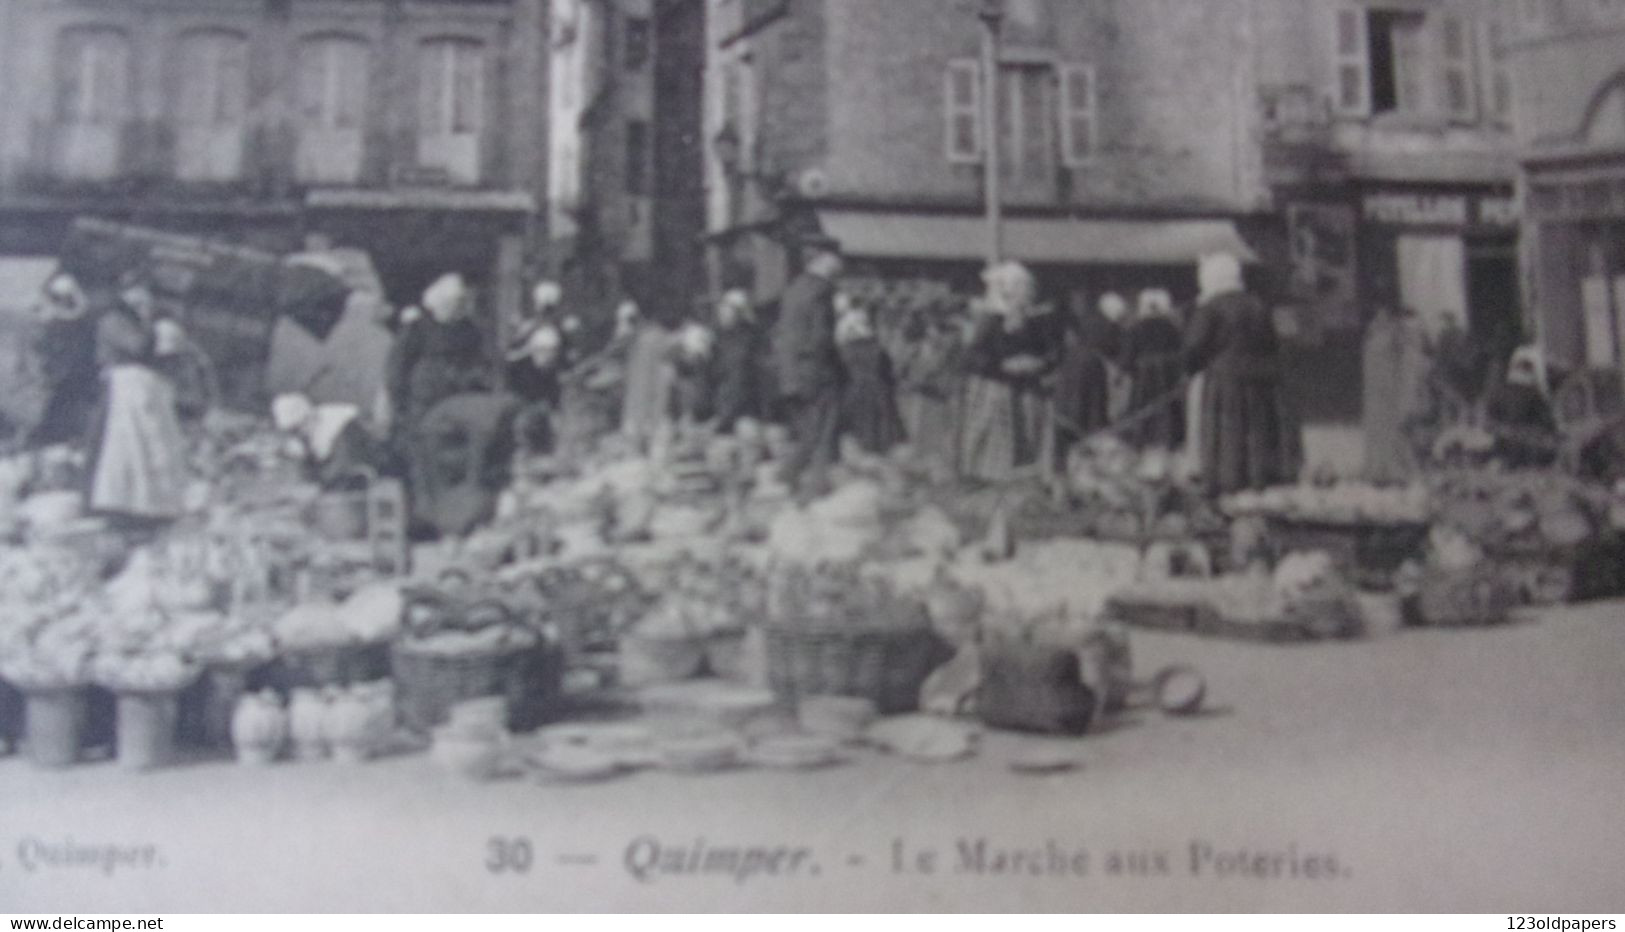 29 QUIMPER 30 LE MARCHE AUX POTERIES 1905 - Quimper